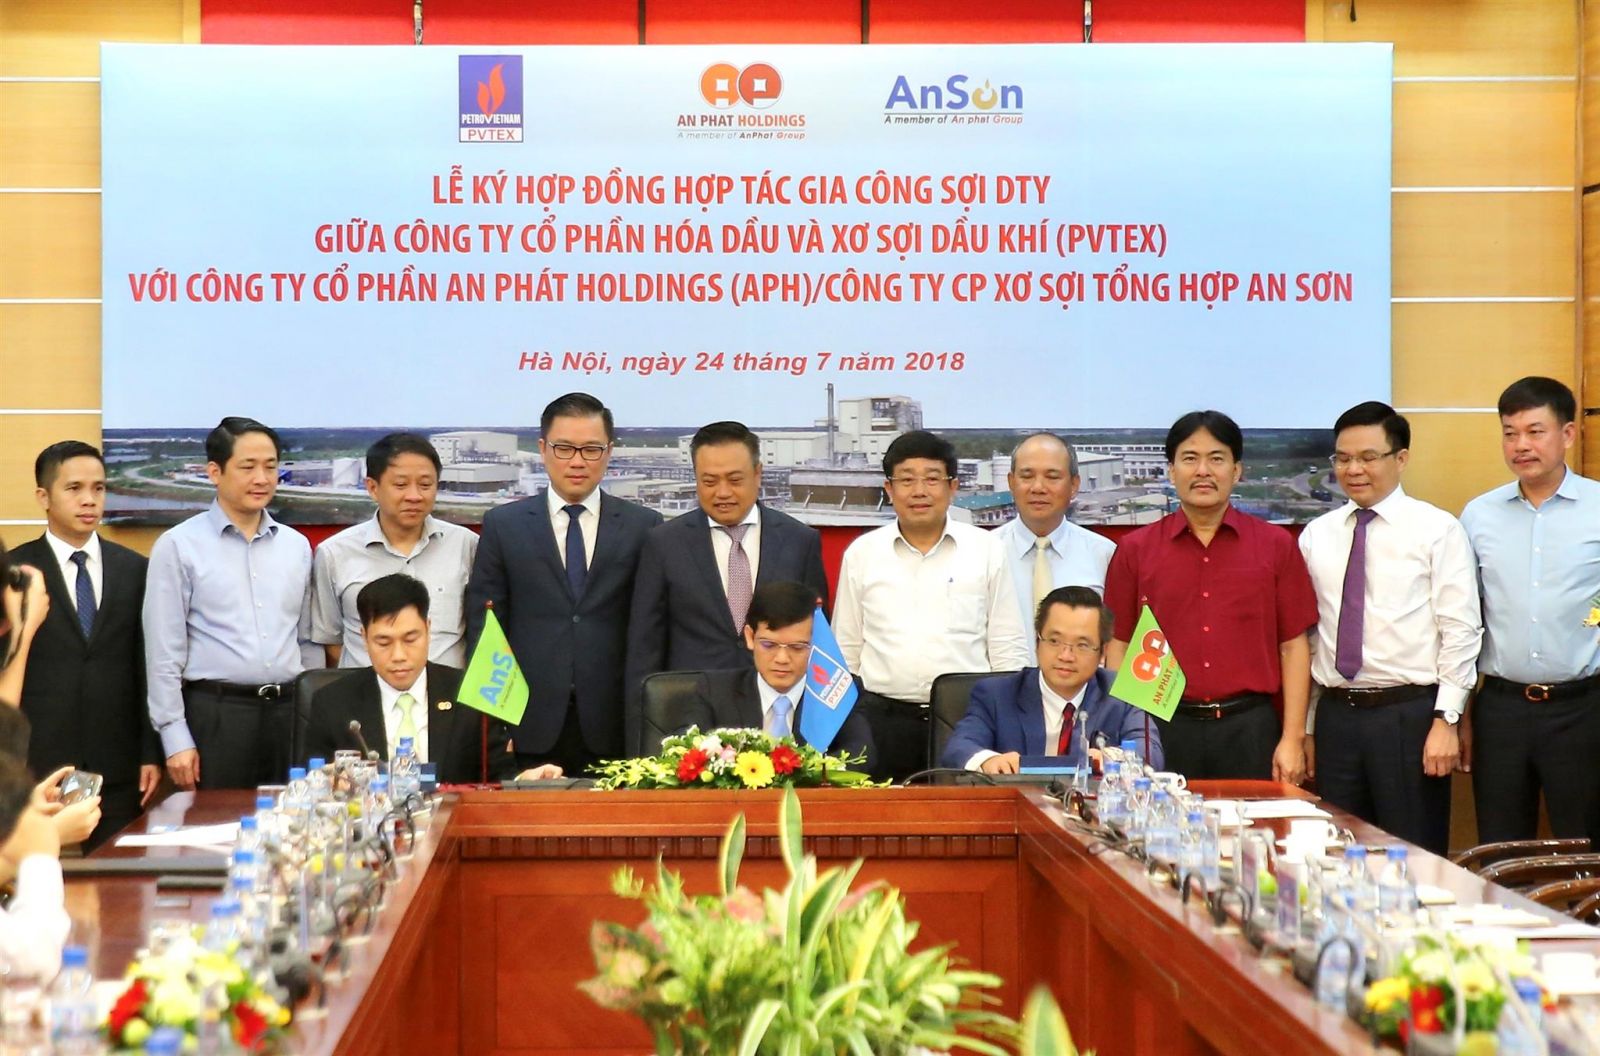 Ông Hồ Trí Dũng (thứ nhất từ trái sang) trên vai trò mới là Tổng GĐ Cty An Sơn ký kết hợp đồng hợp tác gia công sợi DTY giữa PVTEX với An Phát/An Sơn.